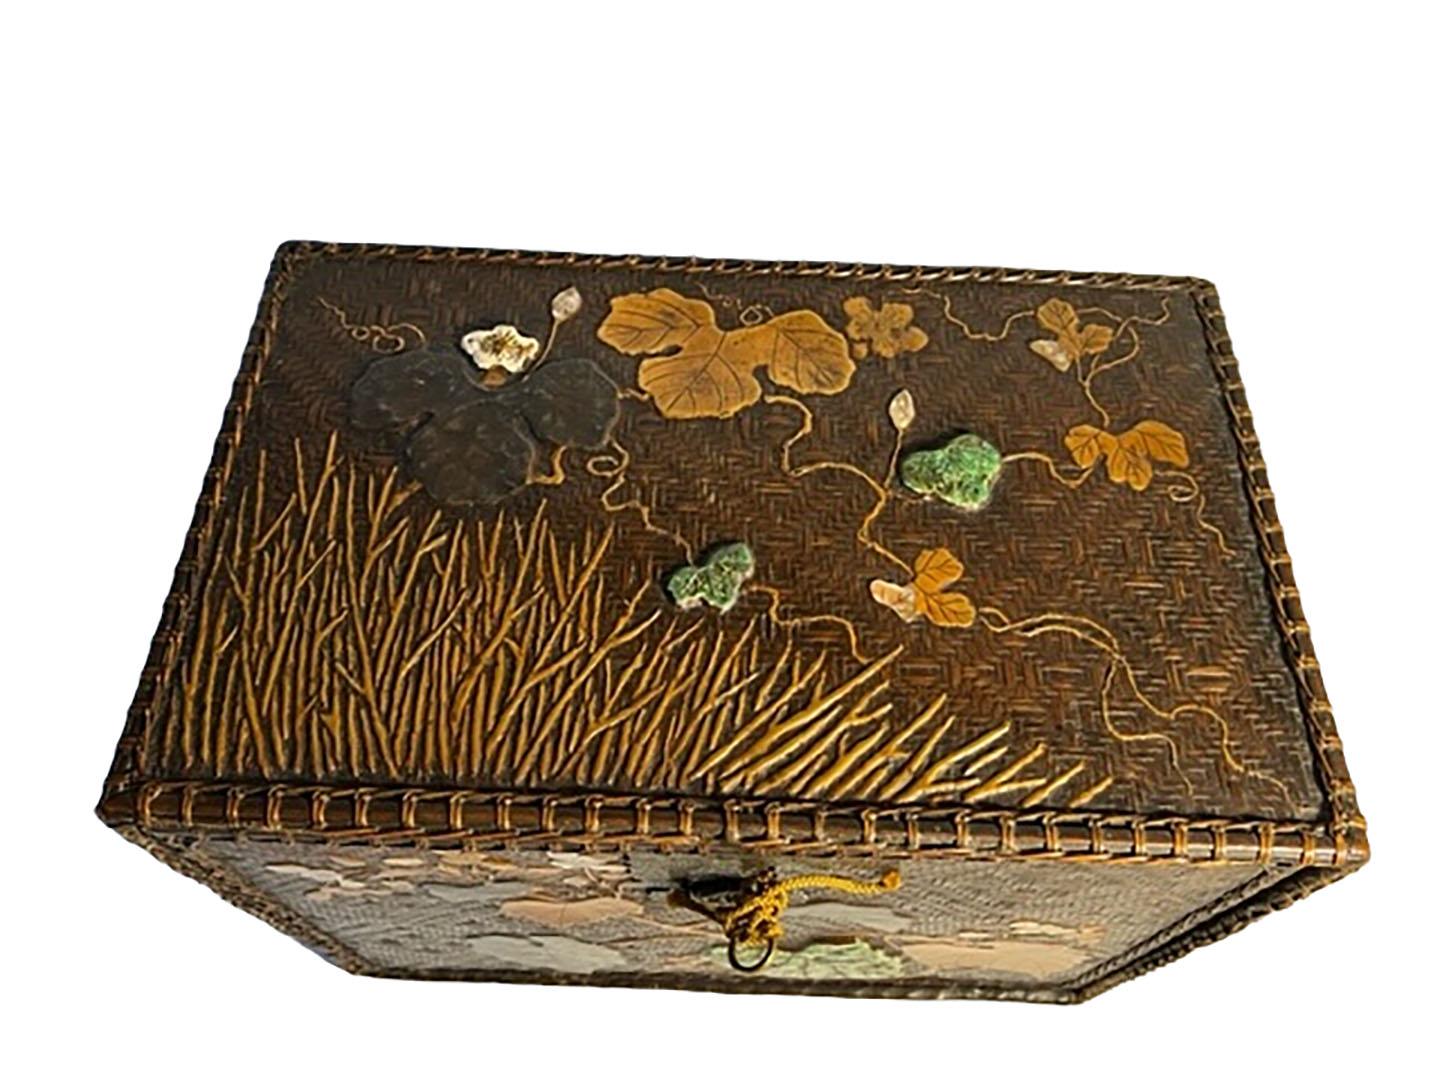 Boîte décorative japonaise tissée. Boîte japonaise de la fin de l'ère Edo/du début de l'ère Meiji, avec
incrustation de nacre et de céramique dans un motif de feuilles d'automne. Complet avec serrure et clé en état de marche. Vers 1790-1820.